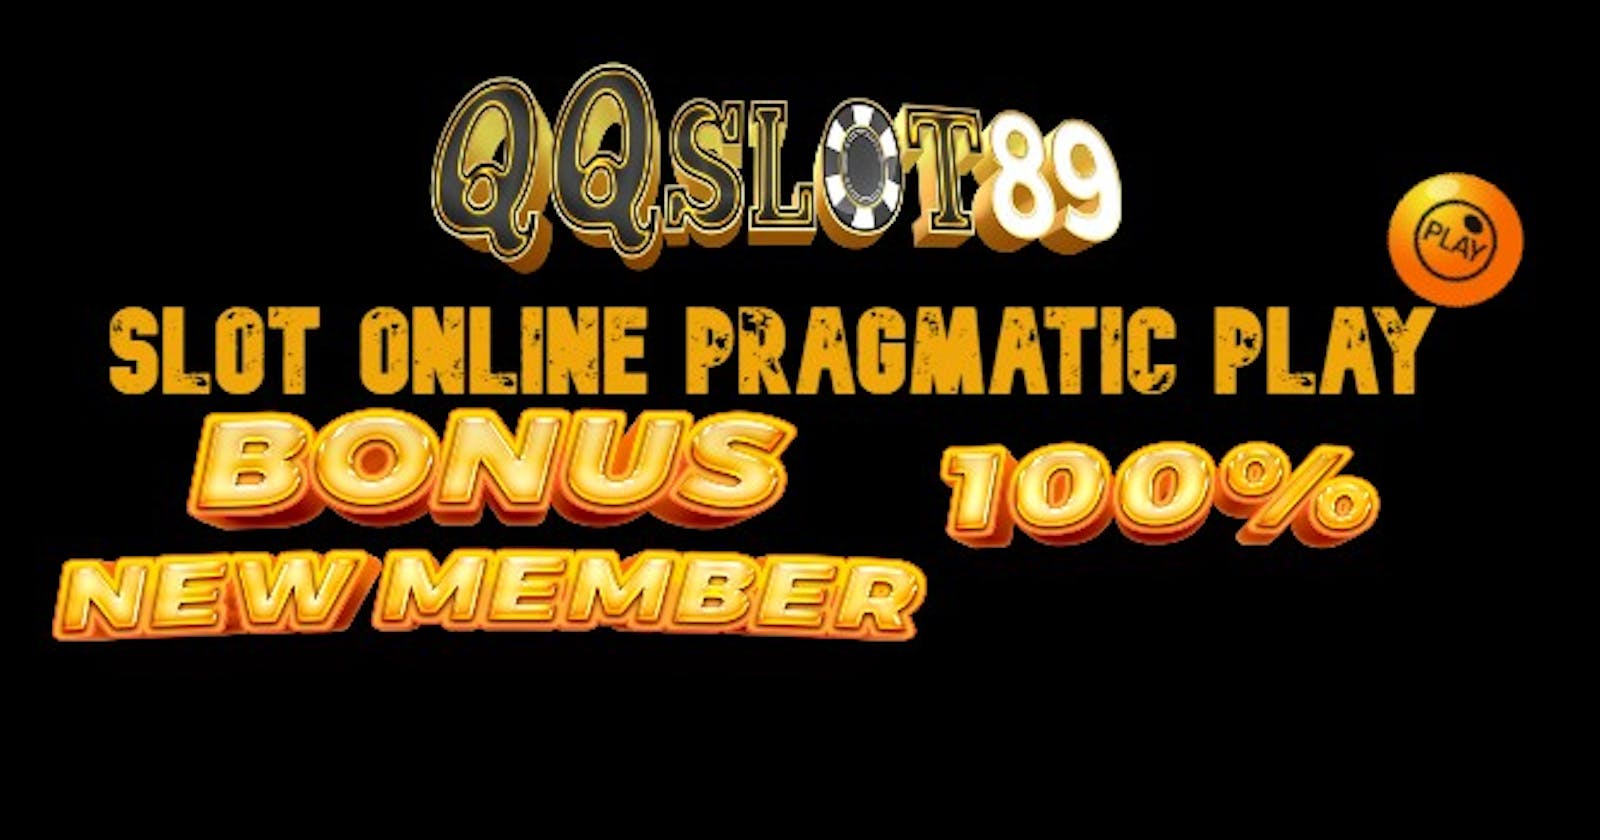 Situs Slot Pragmatic Play Bet 200 Rupiah Terpercaya 2023 - QQSLOT89